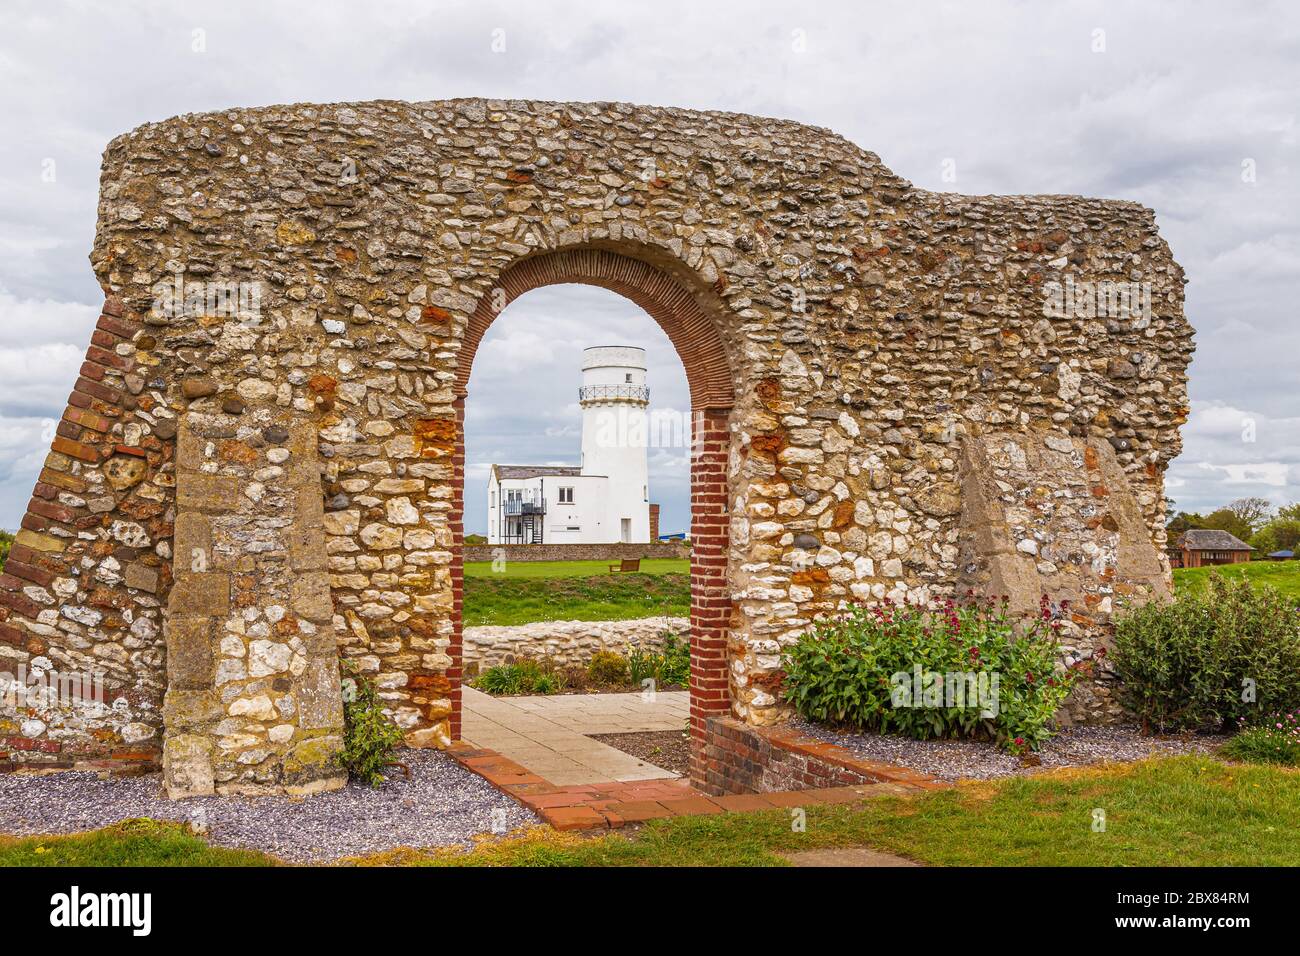 Hunstanton, Norfolk, Inghilterra, Regno Unito, 24 aprile 2019: Faro di Hunstanton, costruito nel 1840 al posto di uno precedente del 17 ° secolo. Foto Stock